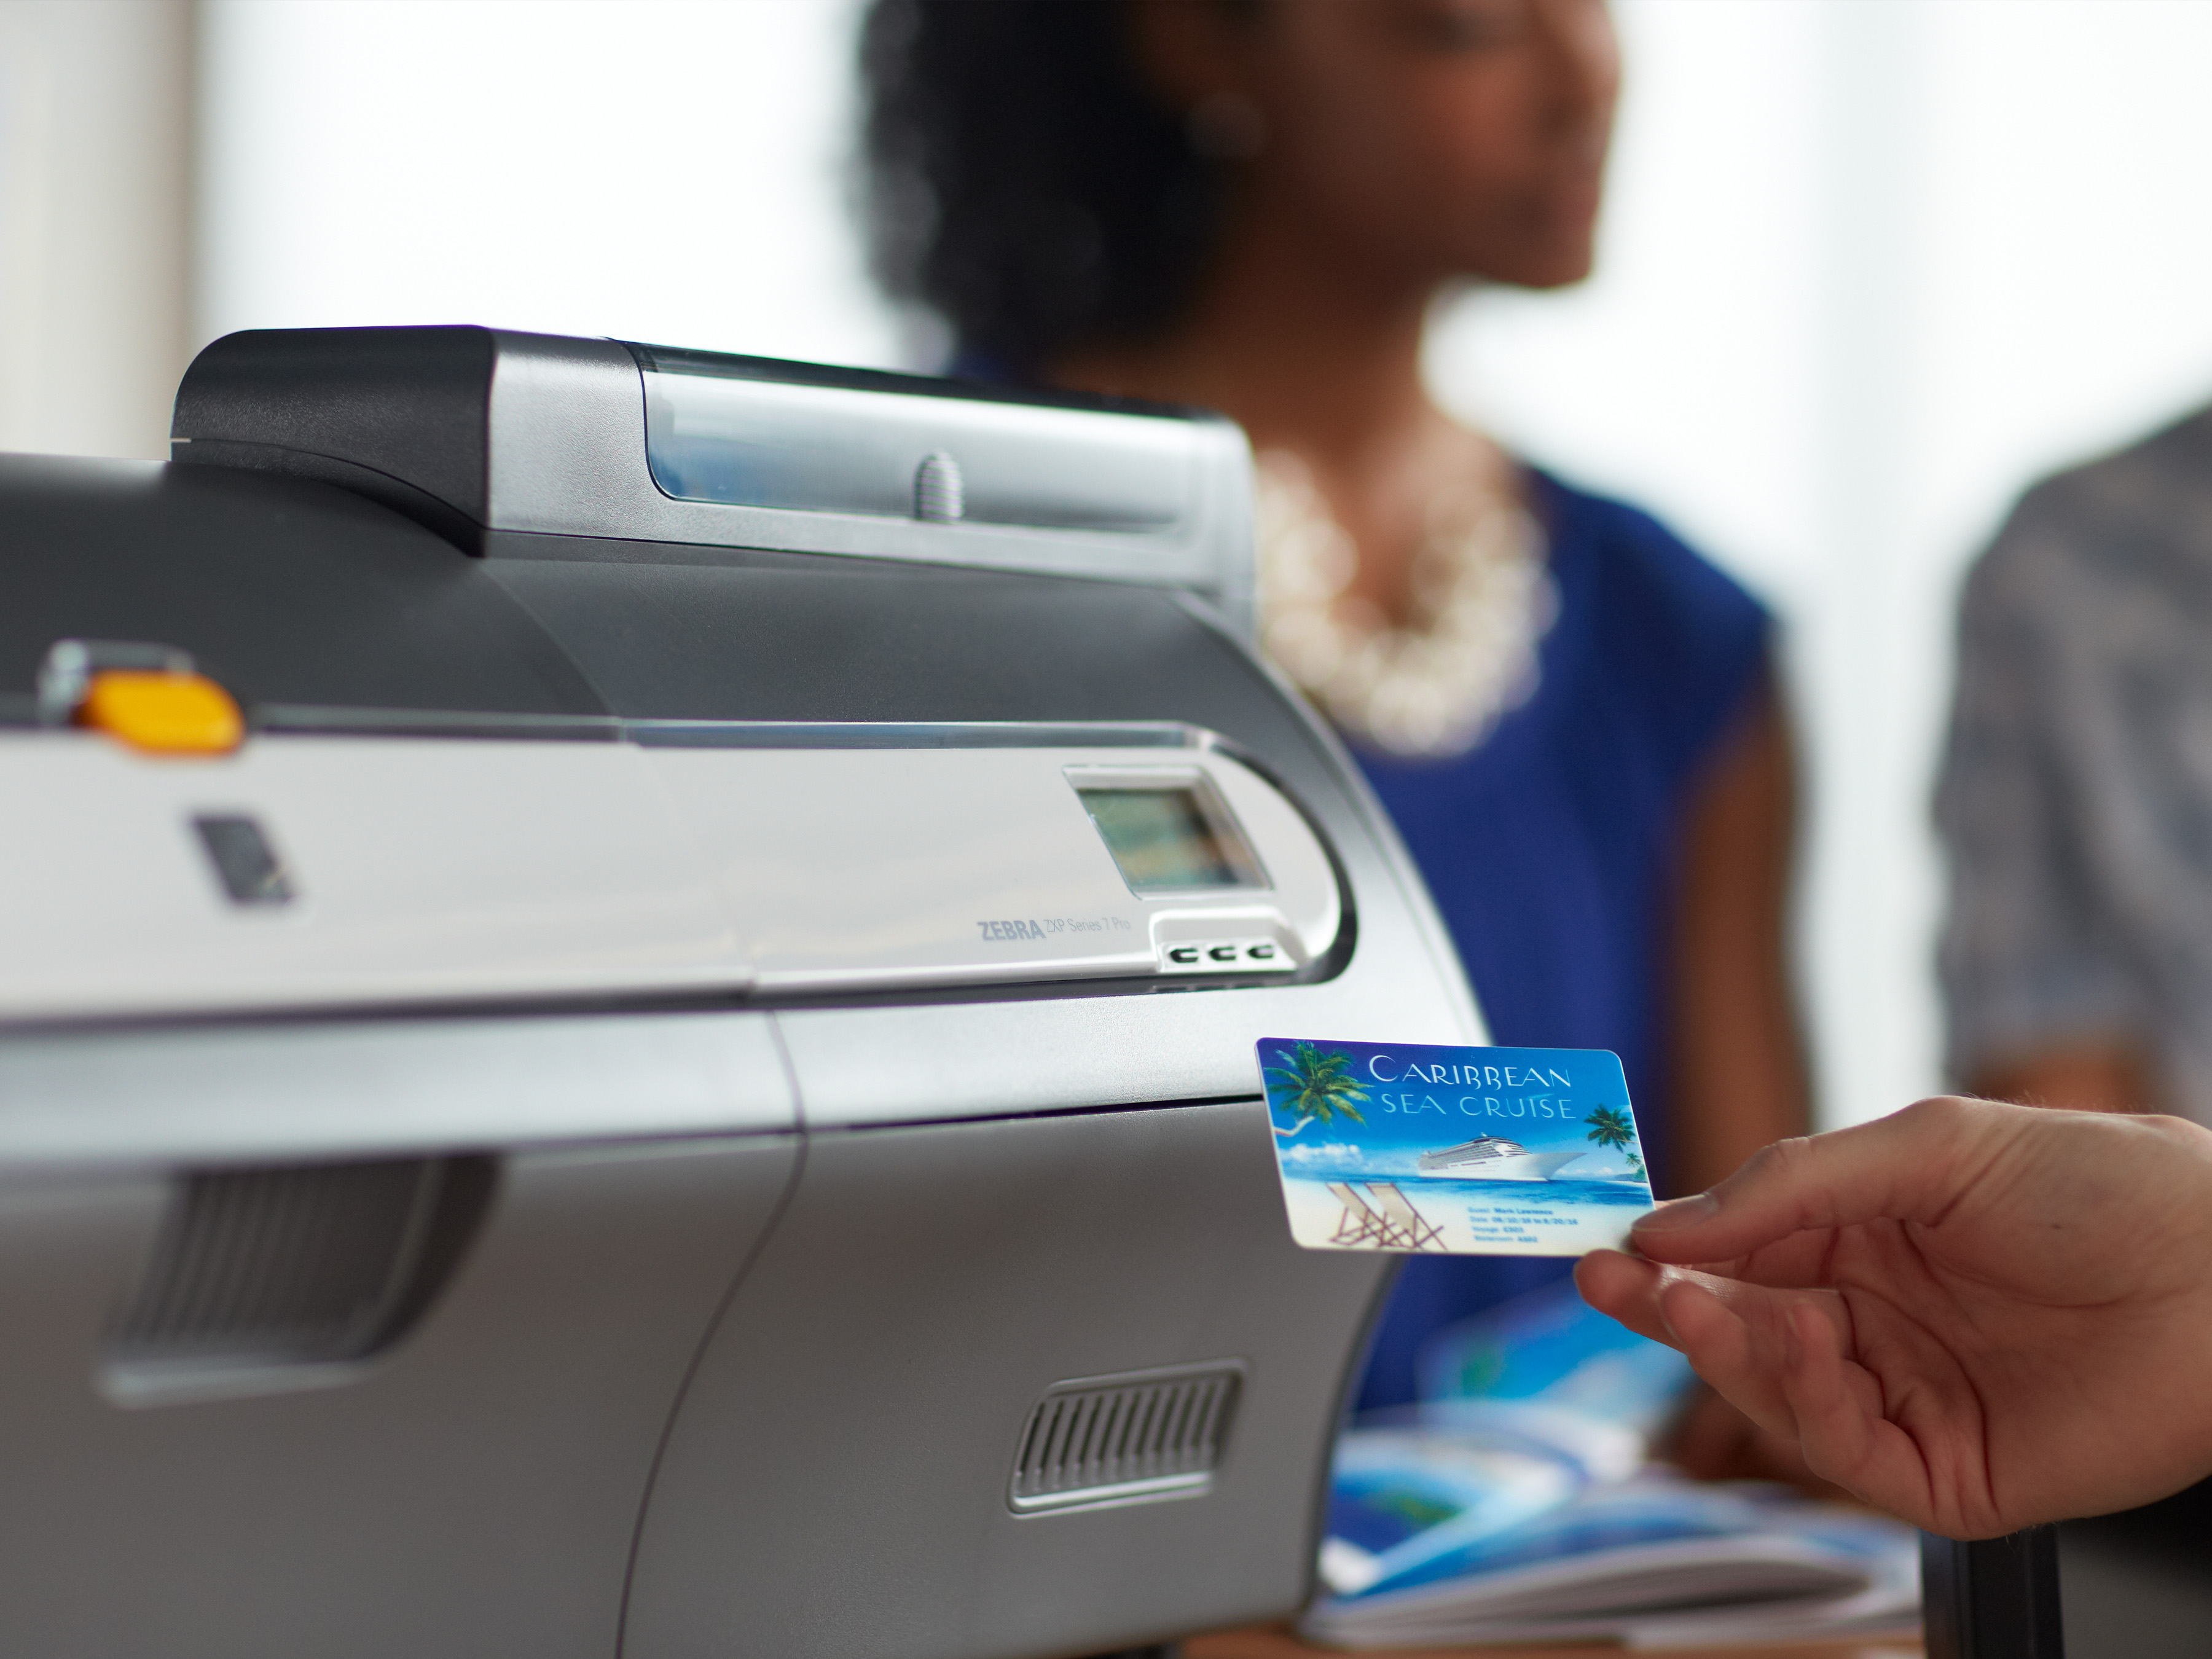 ID 证卡打印机| 门禁卡、驾驶执照等